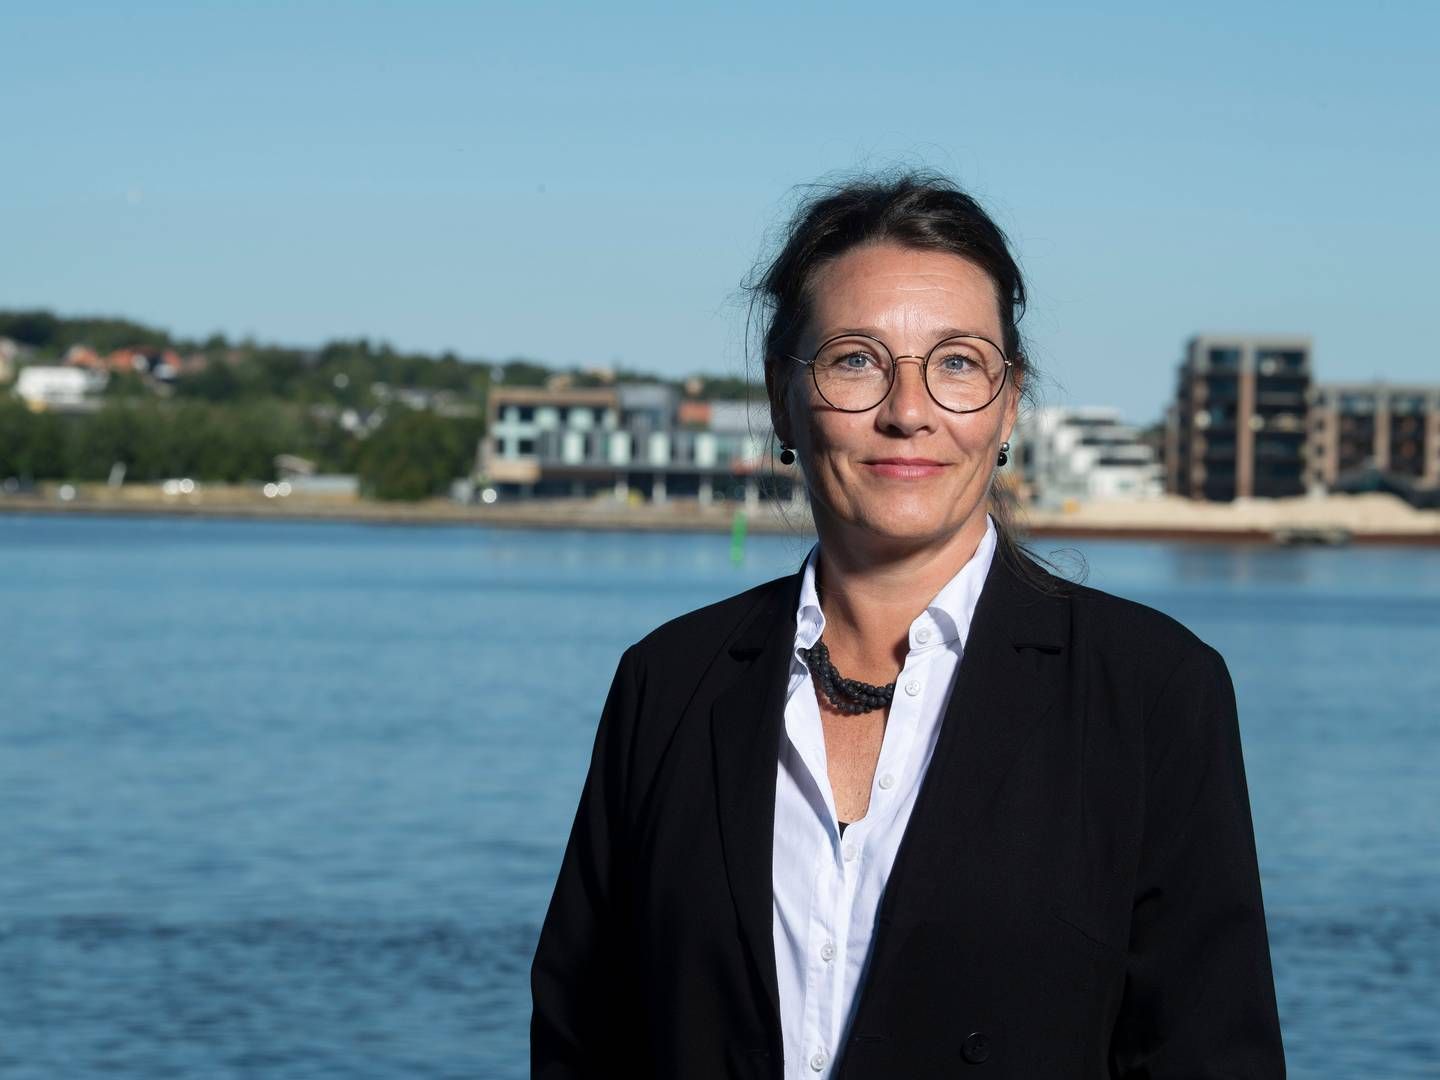 Charlotte Heldorf Rønn har i to år siddet som direktør for miljø og klima, en post, der blandt indebærer ansvar for miljøtilsyn hos virksomheder og landbrug, beskyttelse af grundvand og udledningen af spildevand. | Photo: Foto: Lars Horn / Baghuset